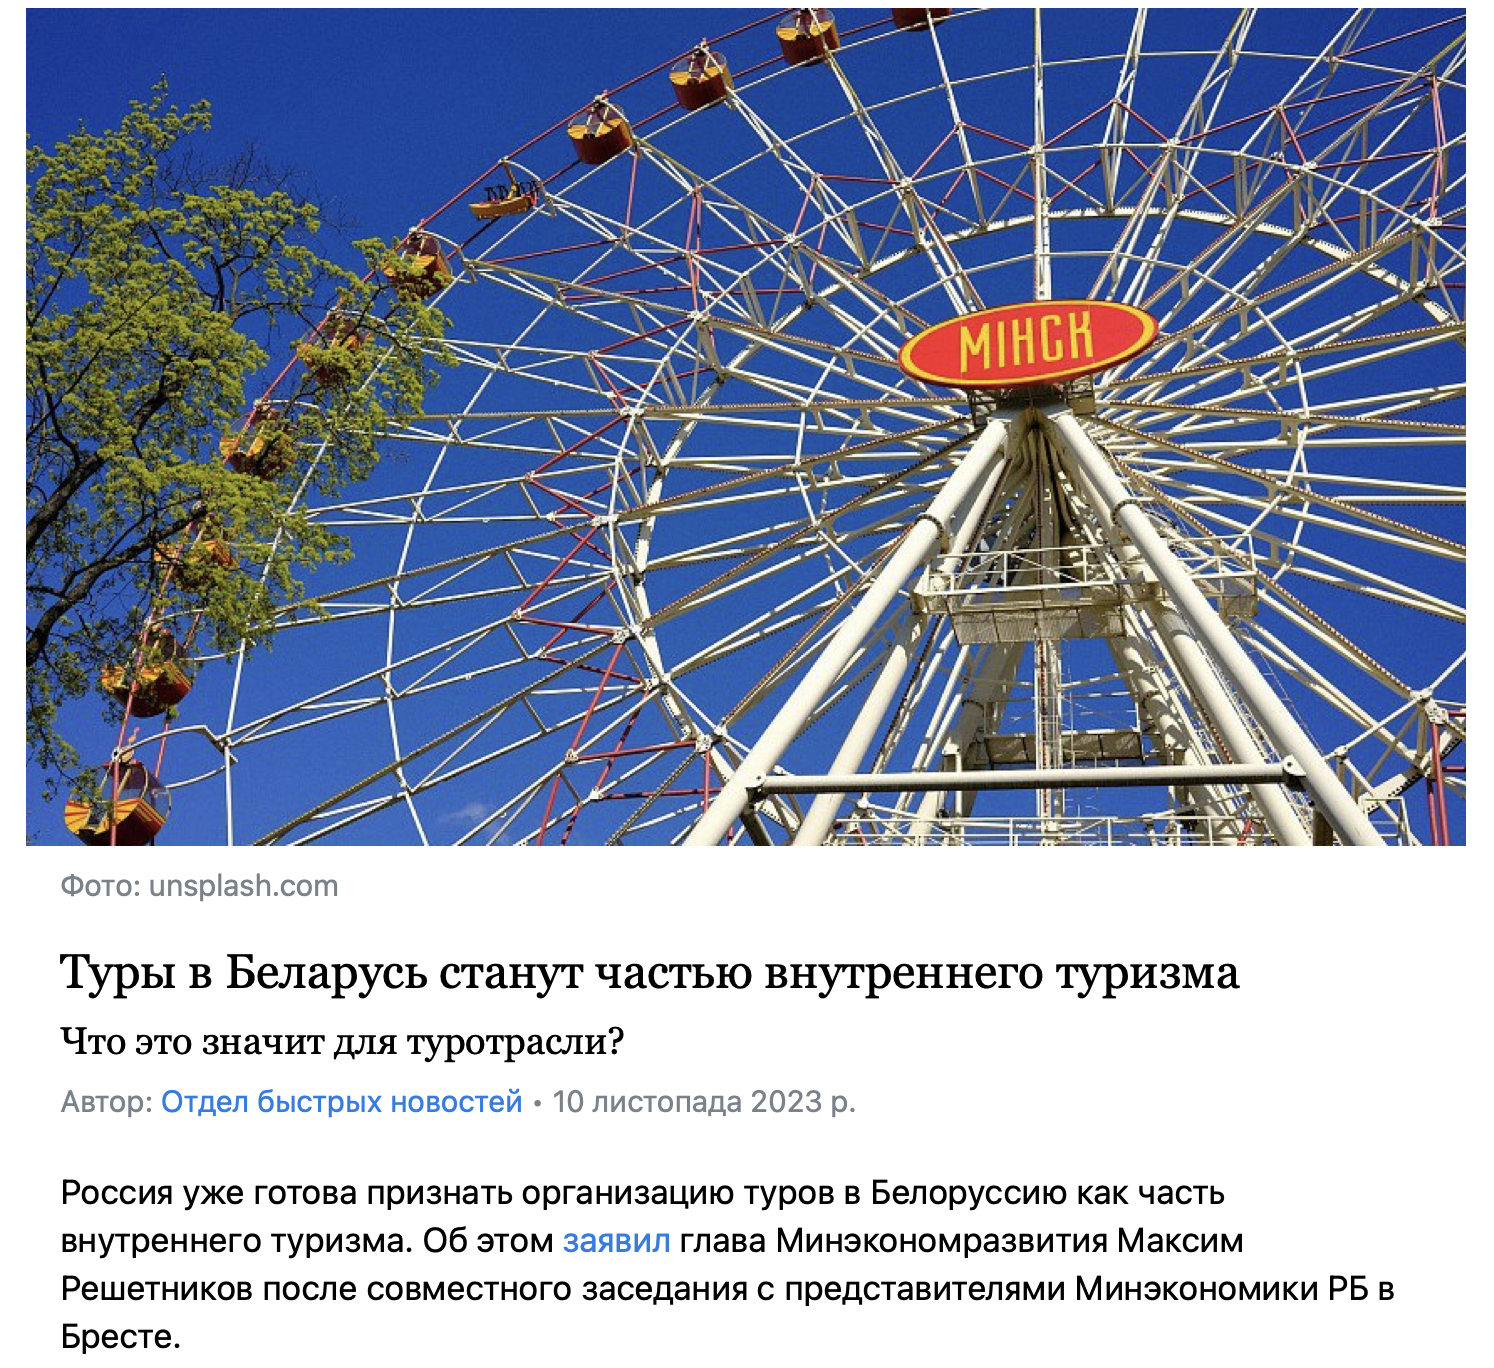 Rosja uznaje wycieczki na Białoruś za część ''turystyki krajowej'': co to oznacza